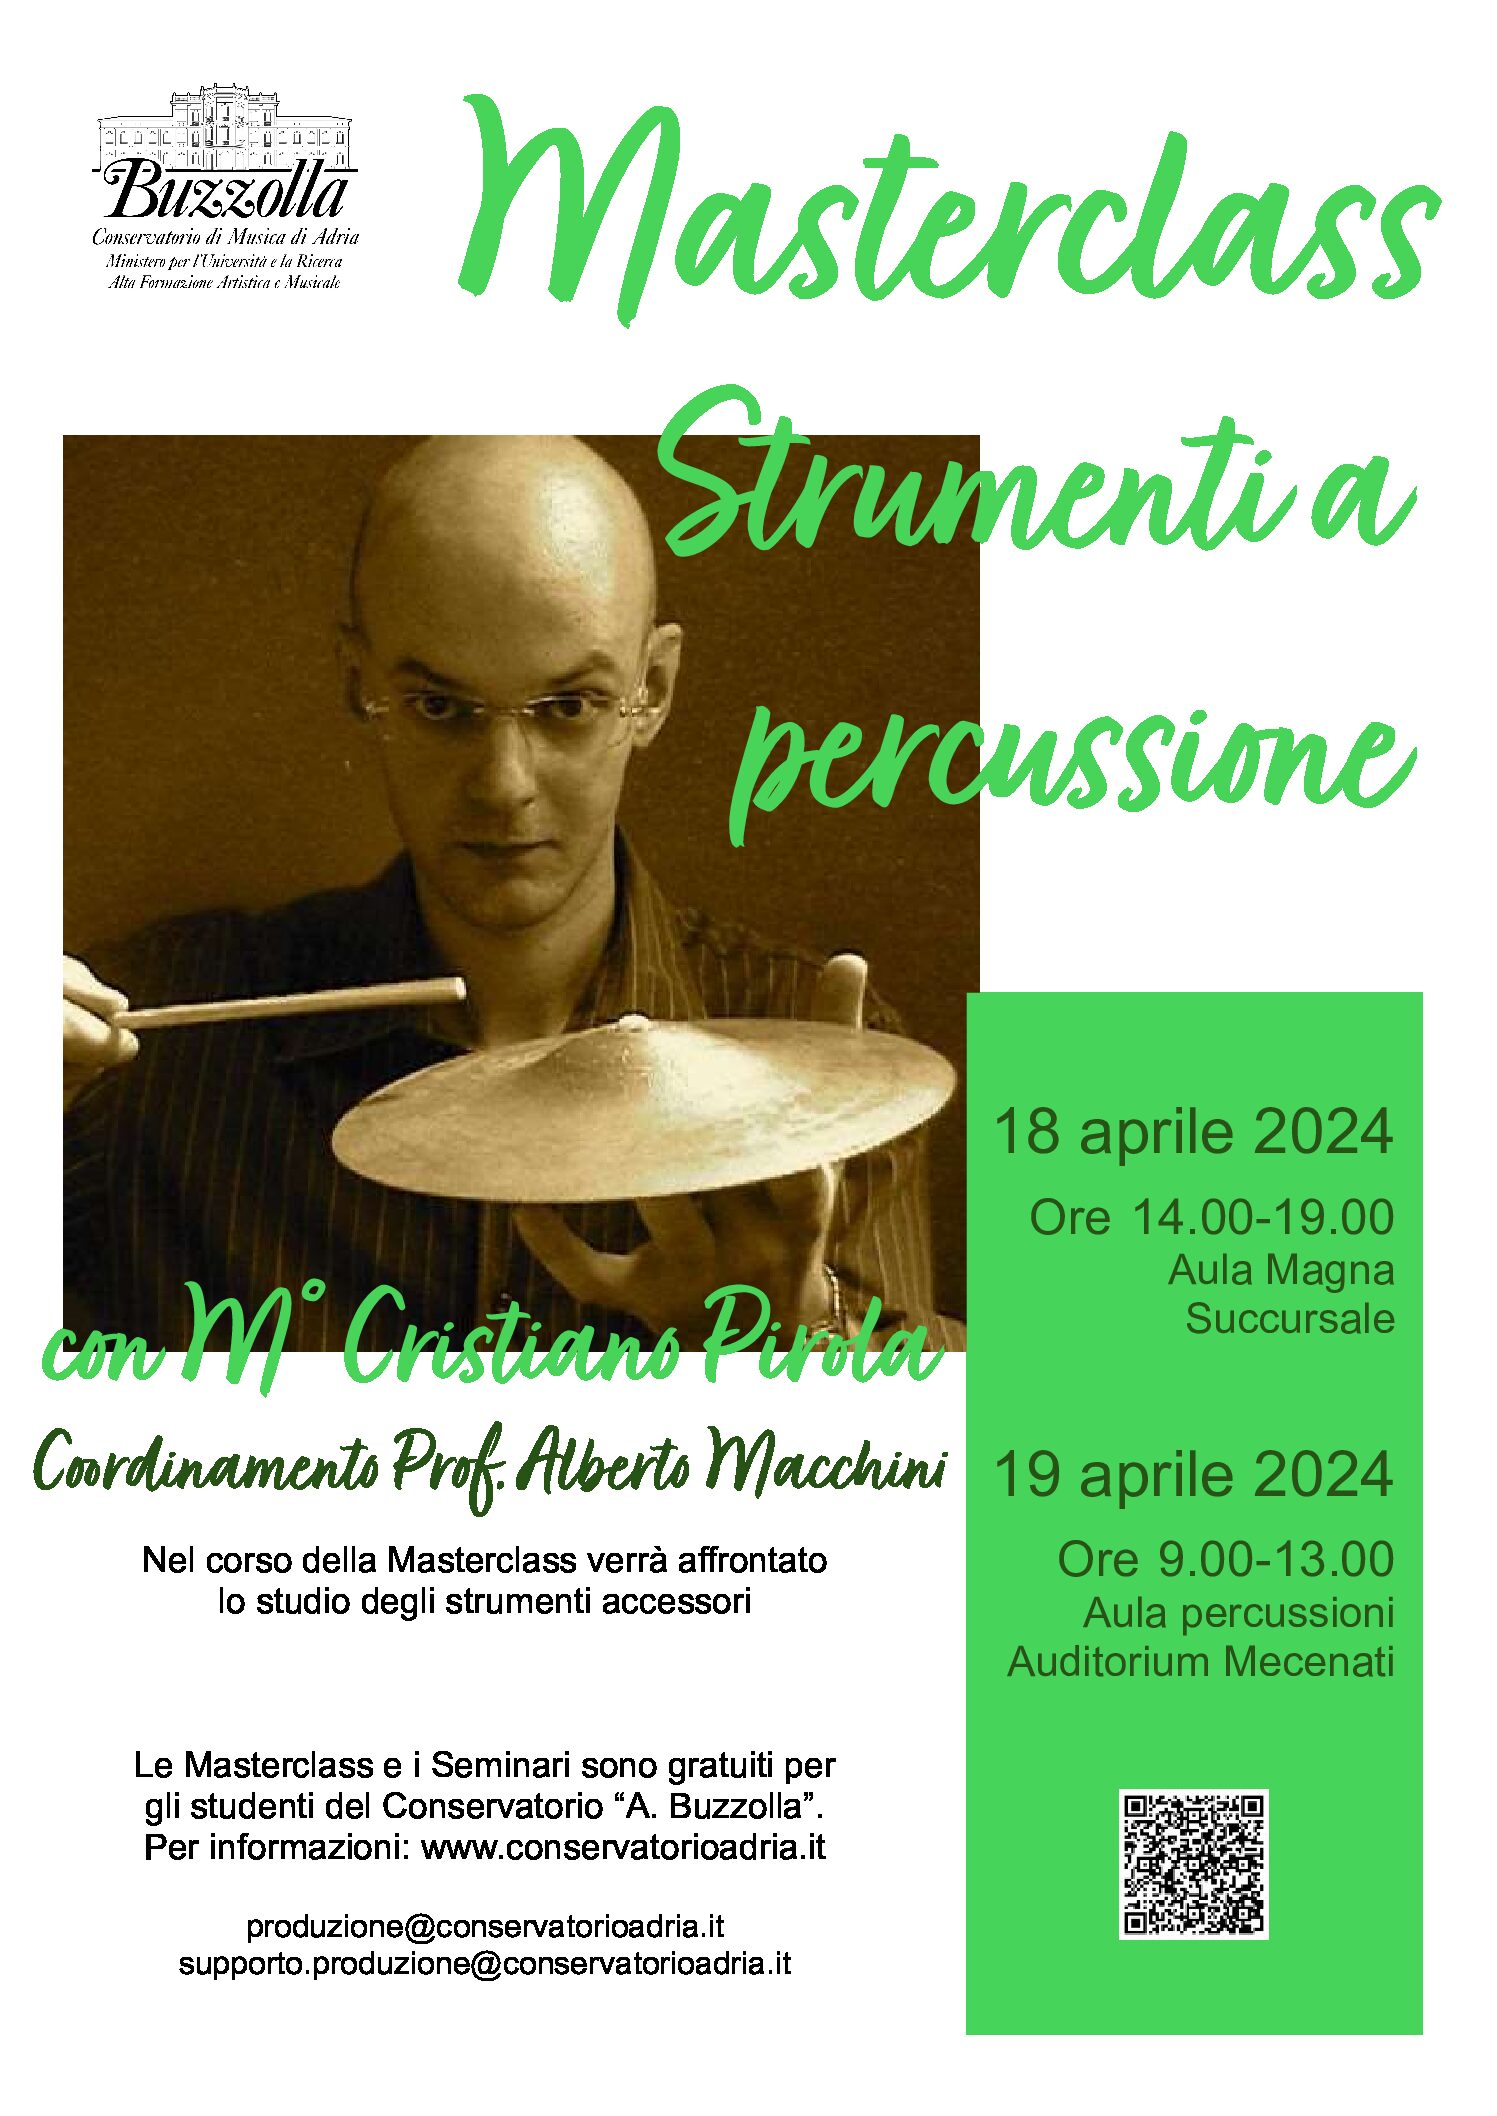 18 e 19 aprile 2024, Masterclass di percussioni con il M° CRISTIANO PIROLA